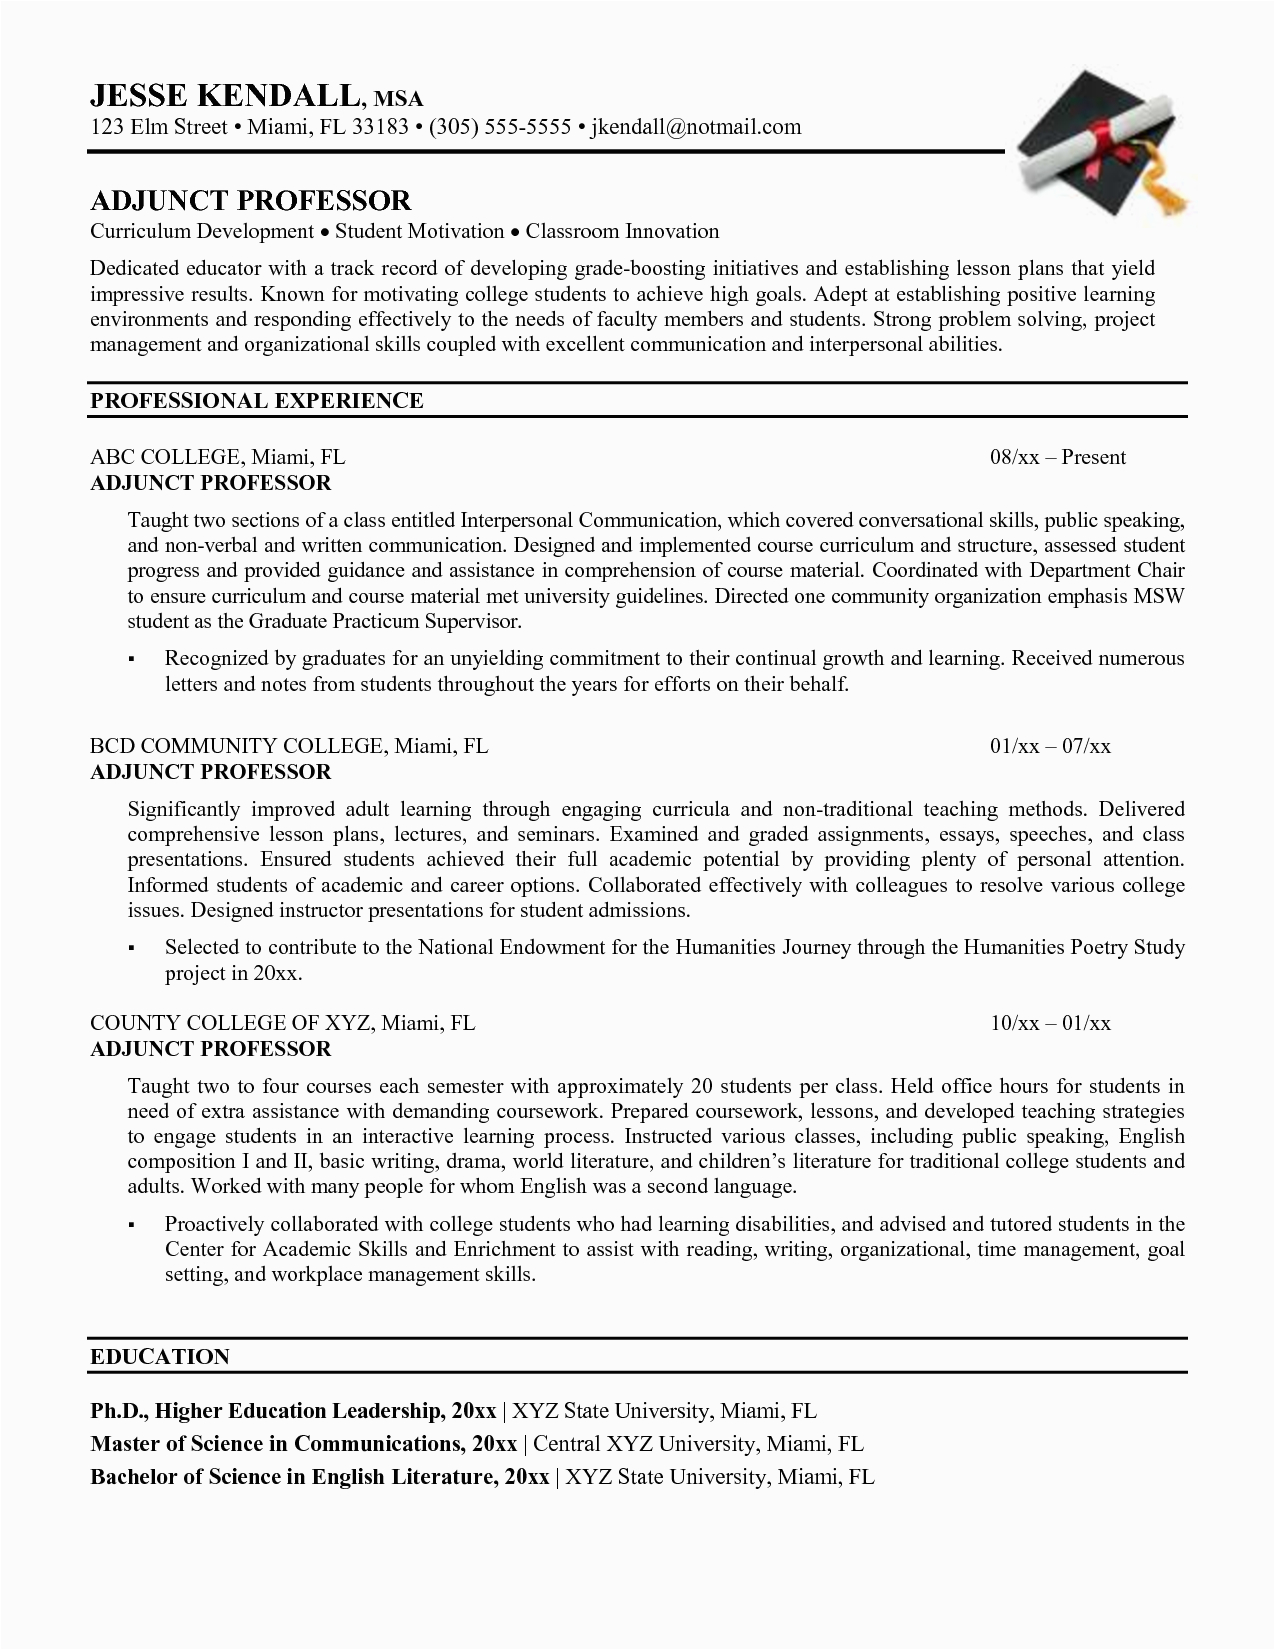 Sample Resume for Lecturer Position In University Sample Resume for Faculty Position Engineering Adjunct